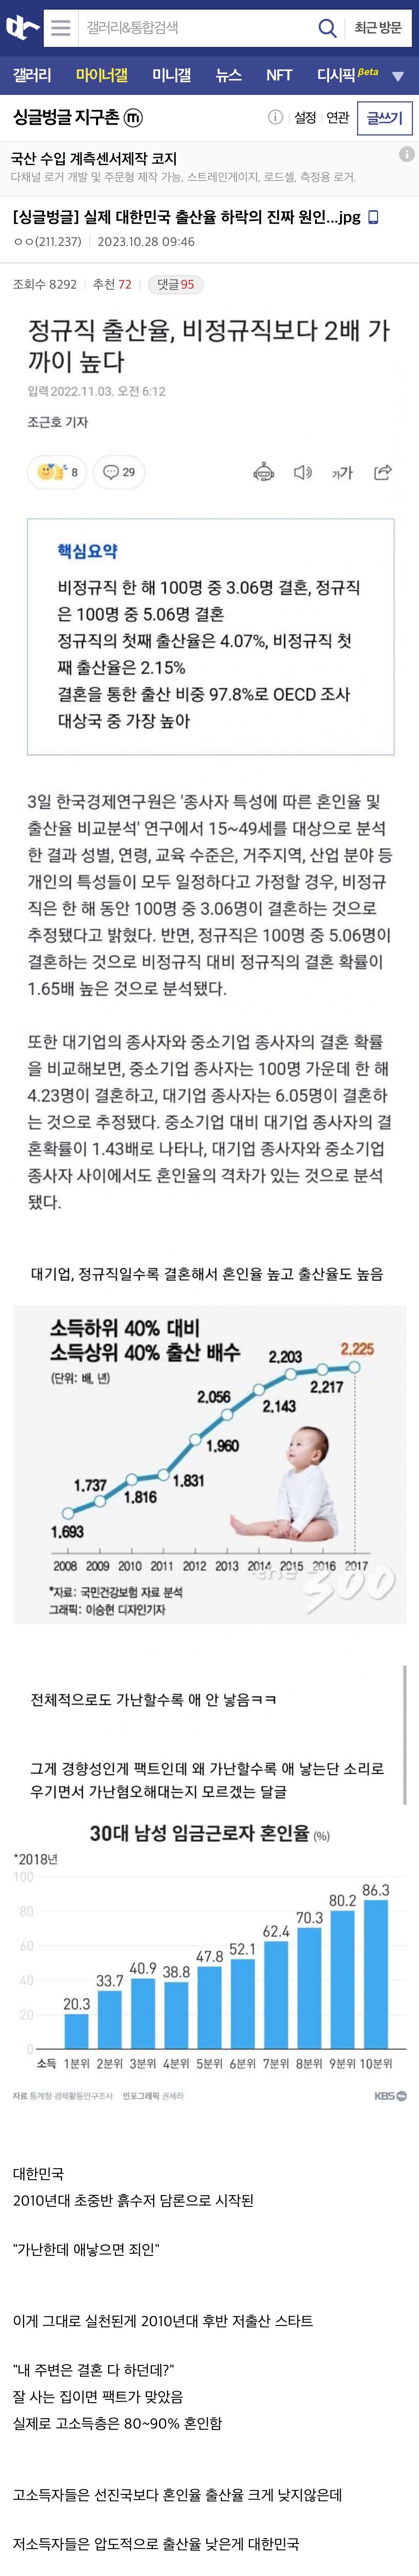 소득이 낮을수록 출산율이 낮은경향이 심한 대한민국